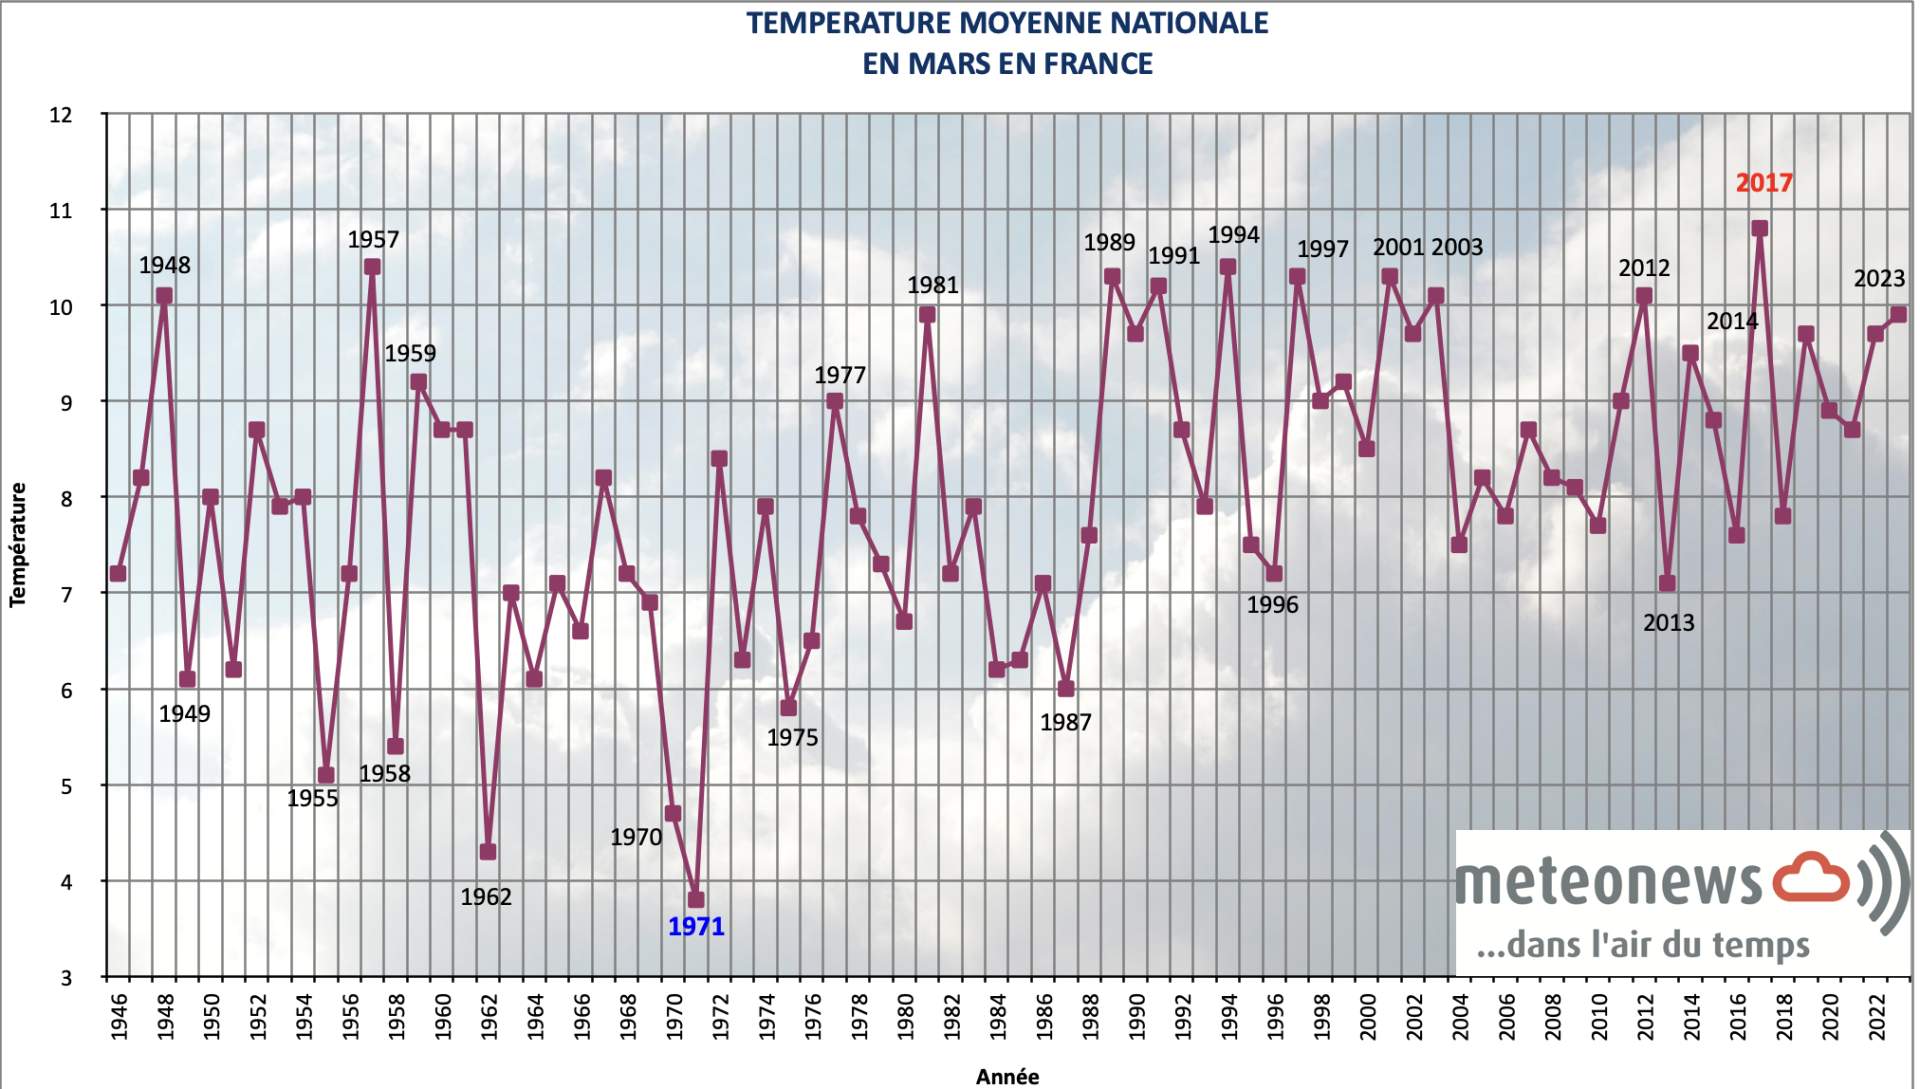 Température moyenne nationale mensuelle en mars en France; Source: MeteoNews